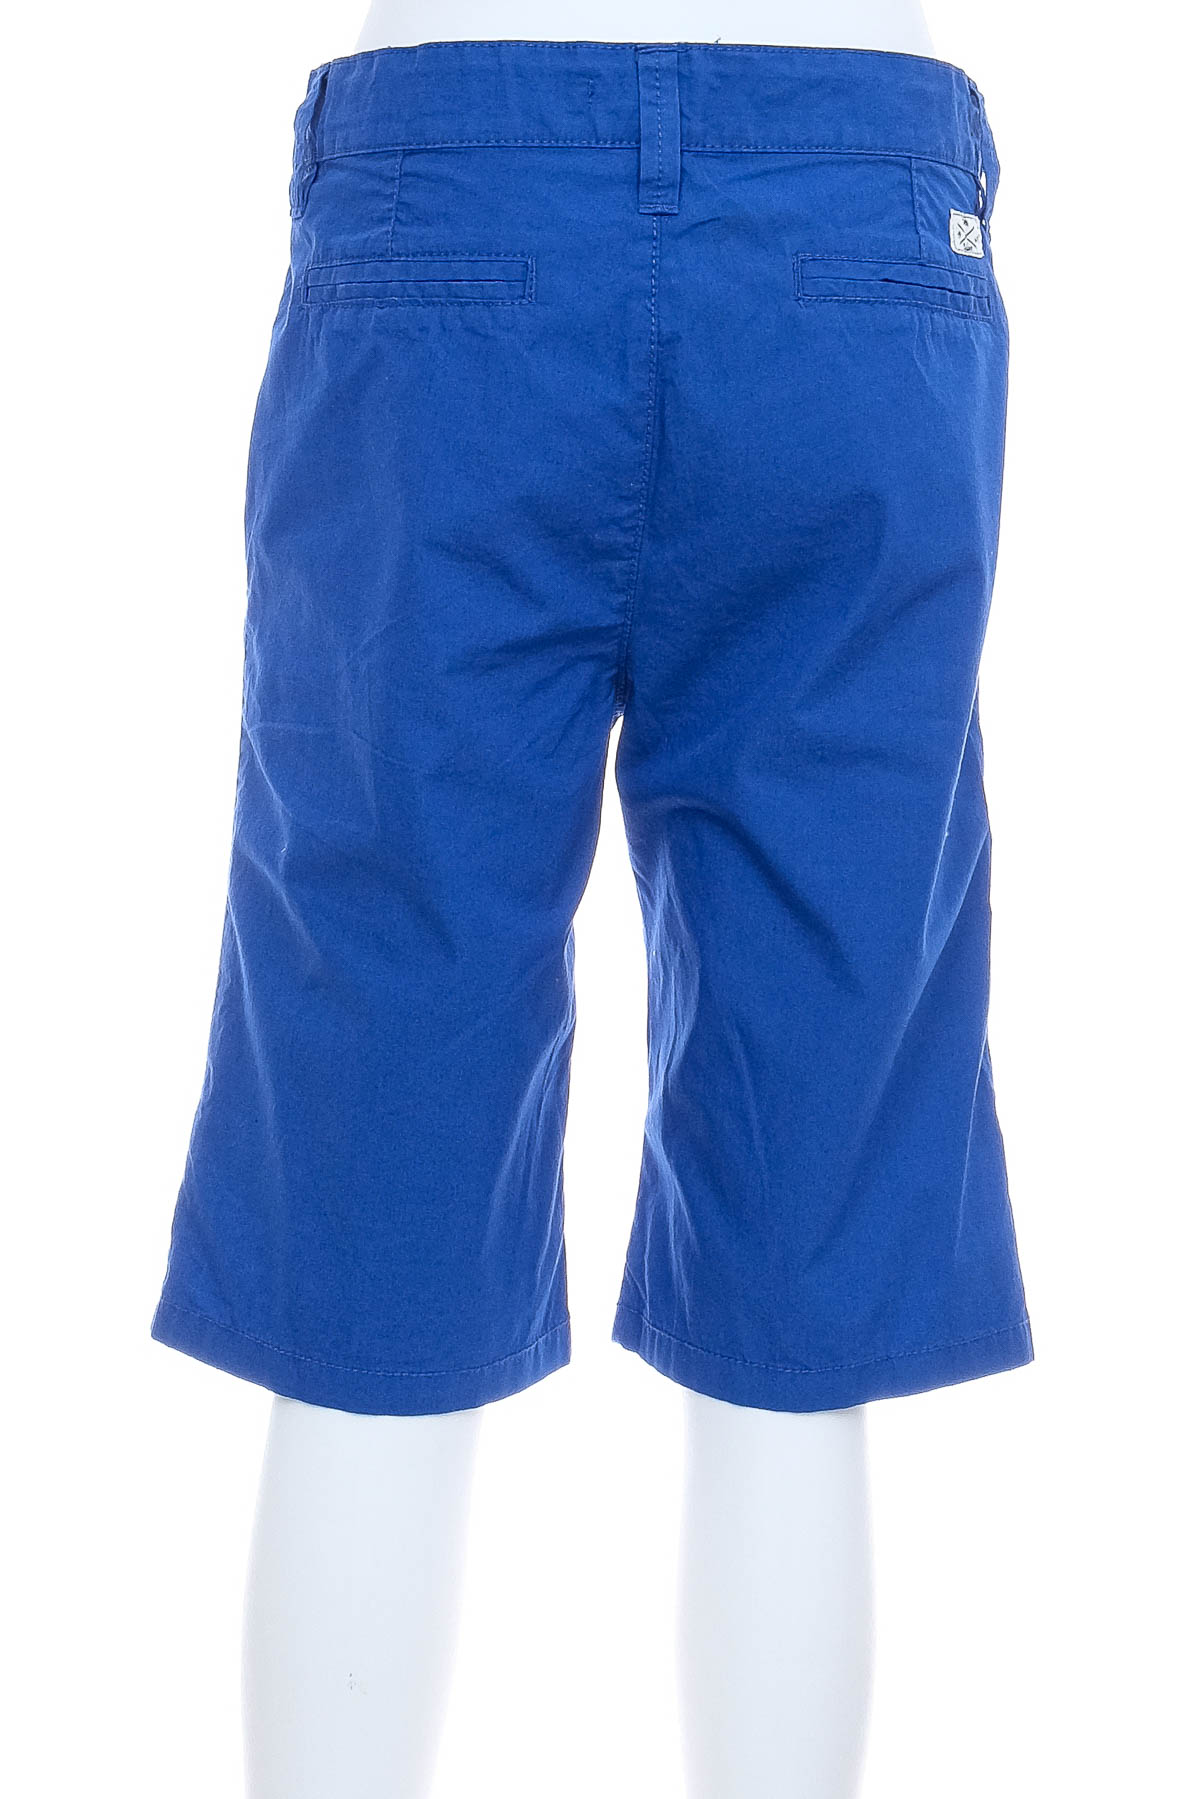 Pantaloni scurți pentru băiat - TOM TAILOR - 1